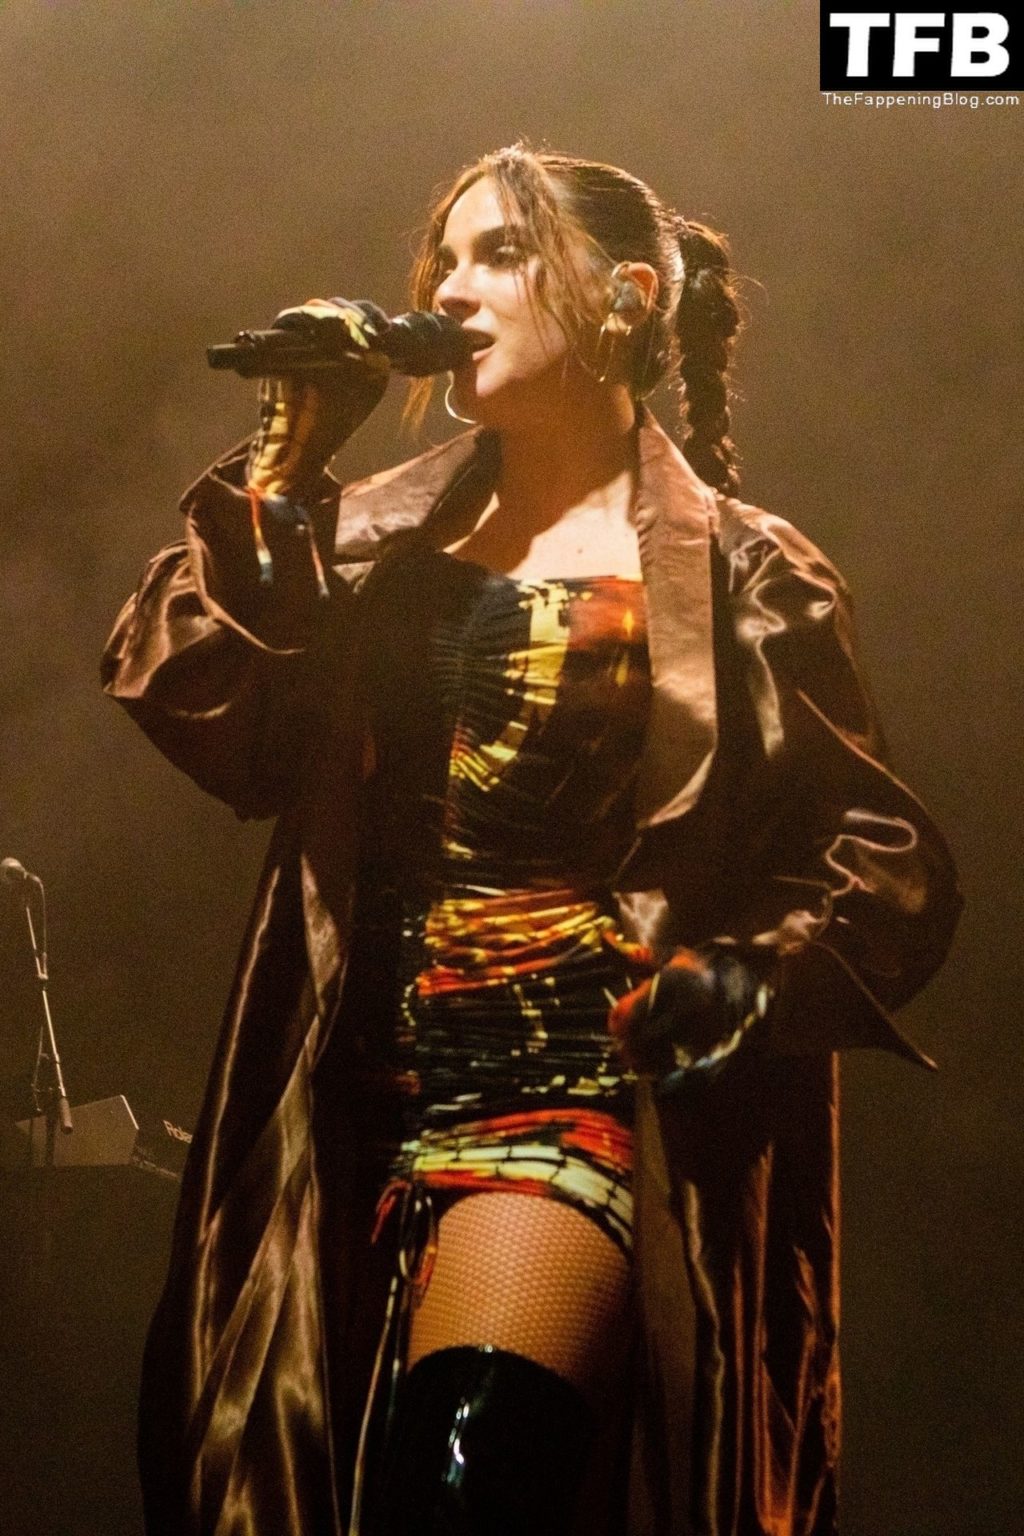 JoJo Flashes Her Underwear Onstage in Birmingham (23 Photos)